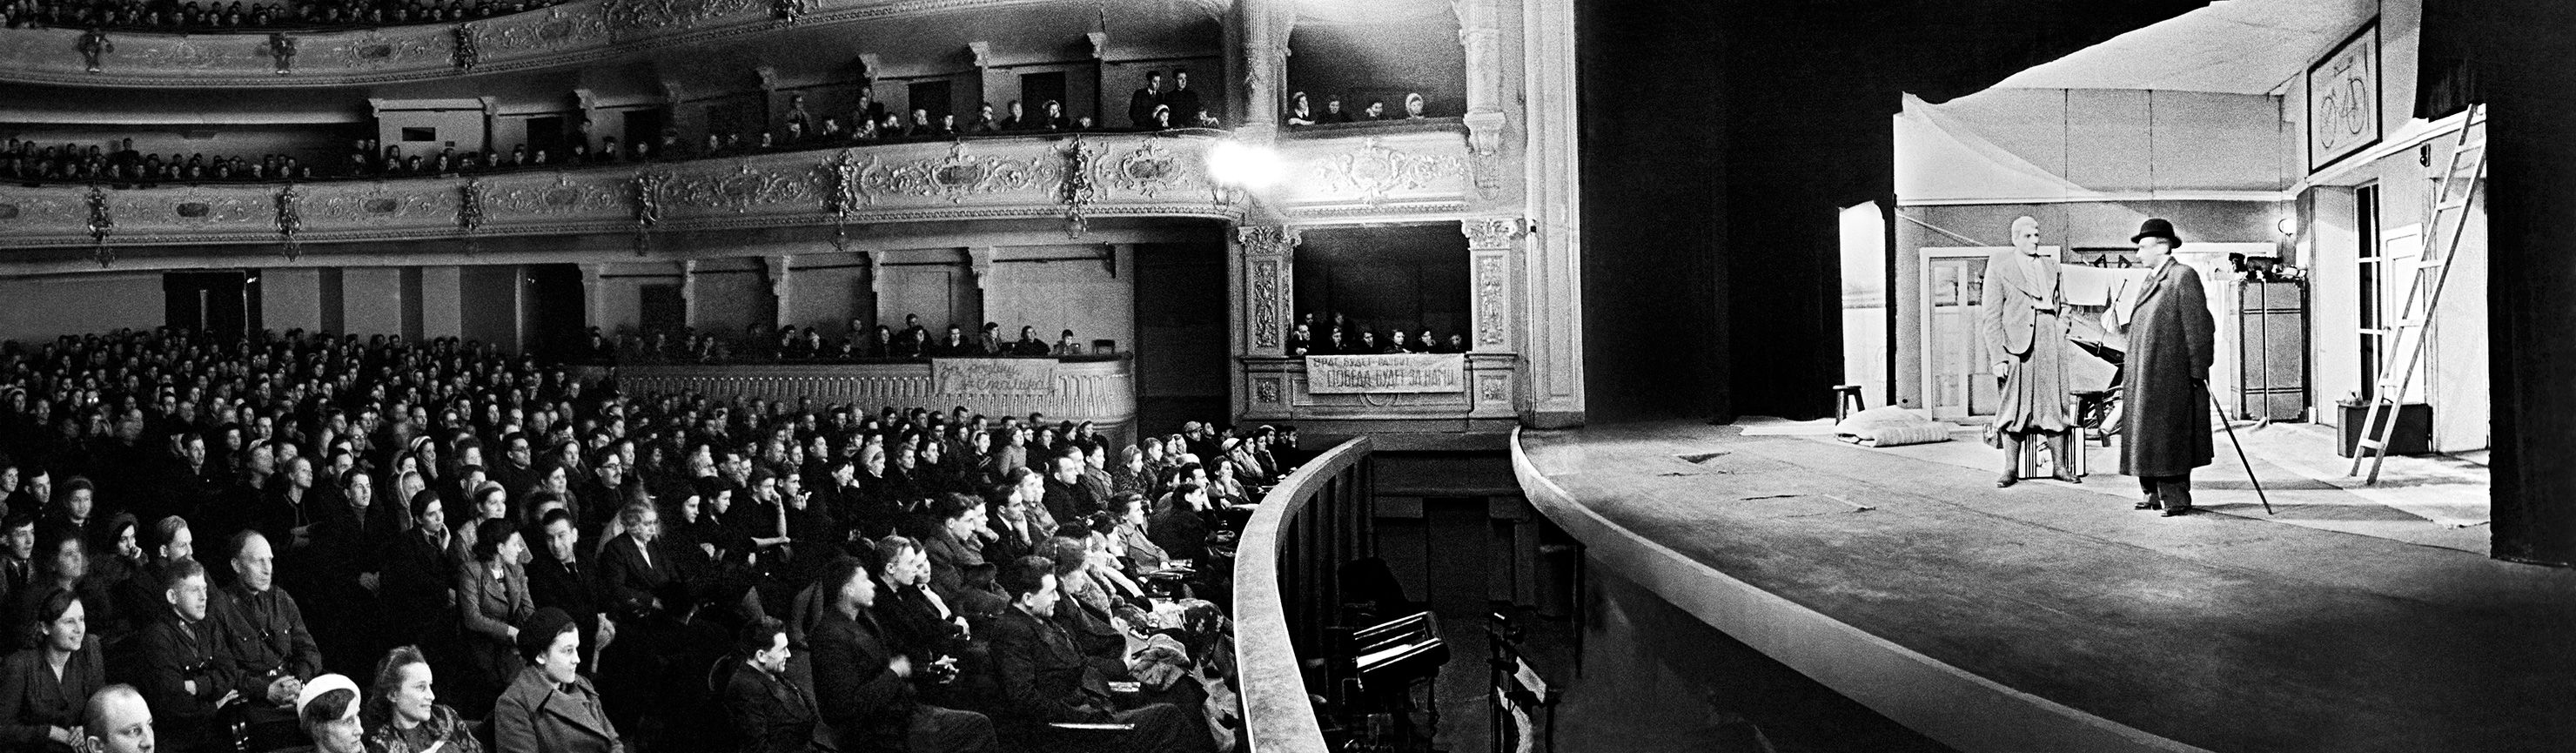 Per sostenere il morale degli abitanti il Teatro musicale allestiva spettacoli nel palazzo sede del Teatro Aleksandrinskij. Nei giorni dell’assedio il celebre pianista sovietico Dmitrij Shostakovich compose la Settima sinfonia di Leningrado, diventata poi celebre in tutto il mondo